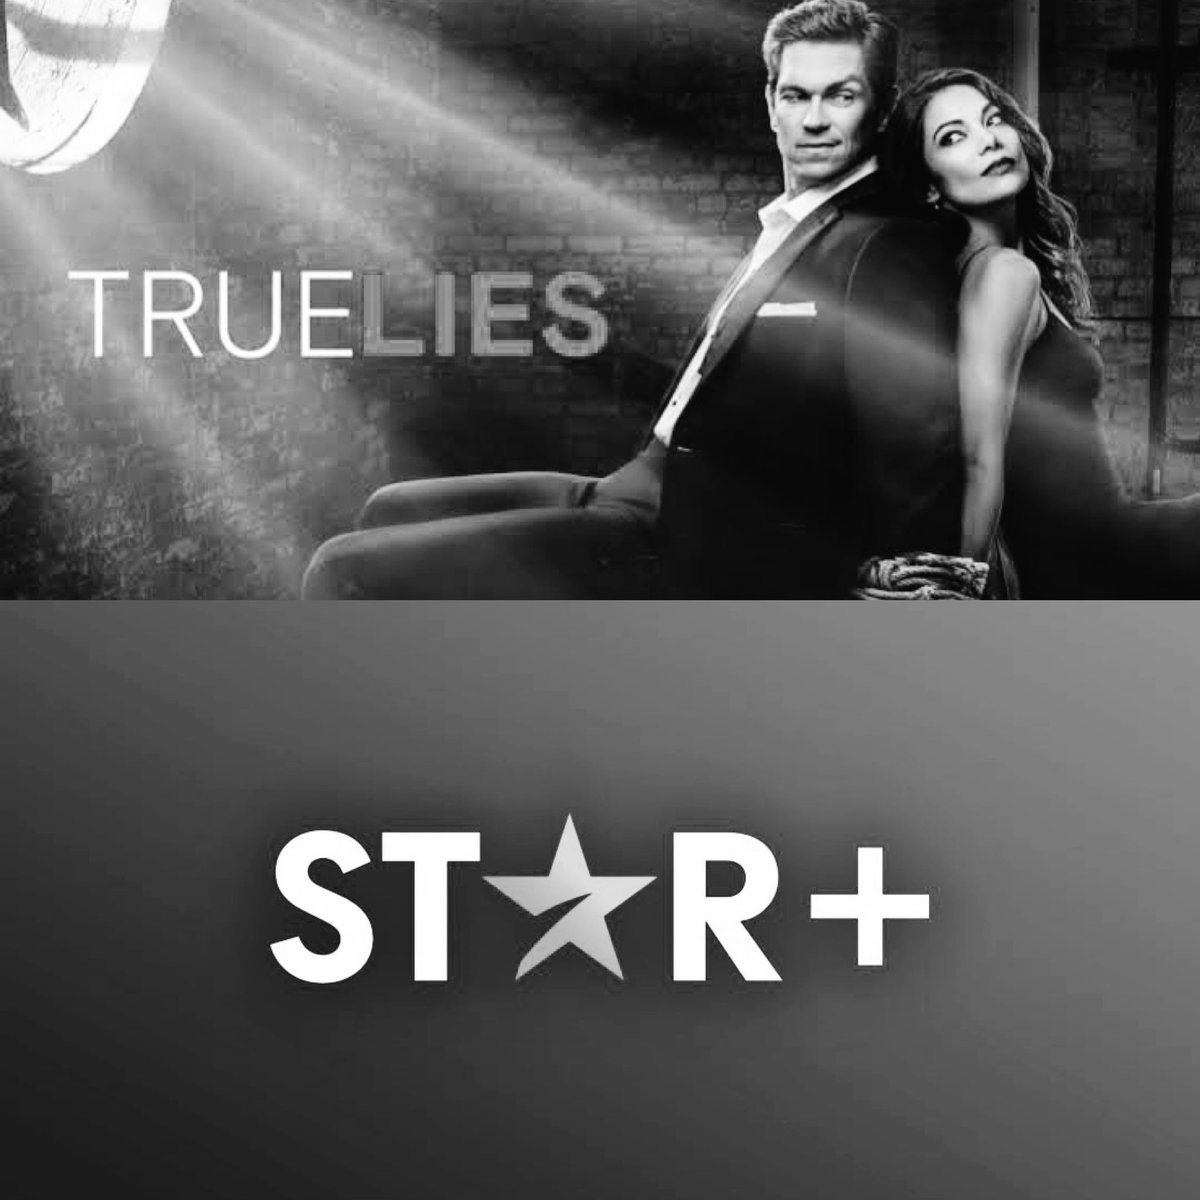 #ULTIMAHORA🚨| SE FUE! Se anuncia que la serie exclusiva de Star+ #TrueLies fue eliminada del catálogo de #StarPlusLA , recordemos que la serie ya fue cancelada con tan solo 1 temporada estrenada! La serie ahora queda sin plataforma donde verla! ❌